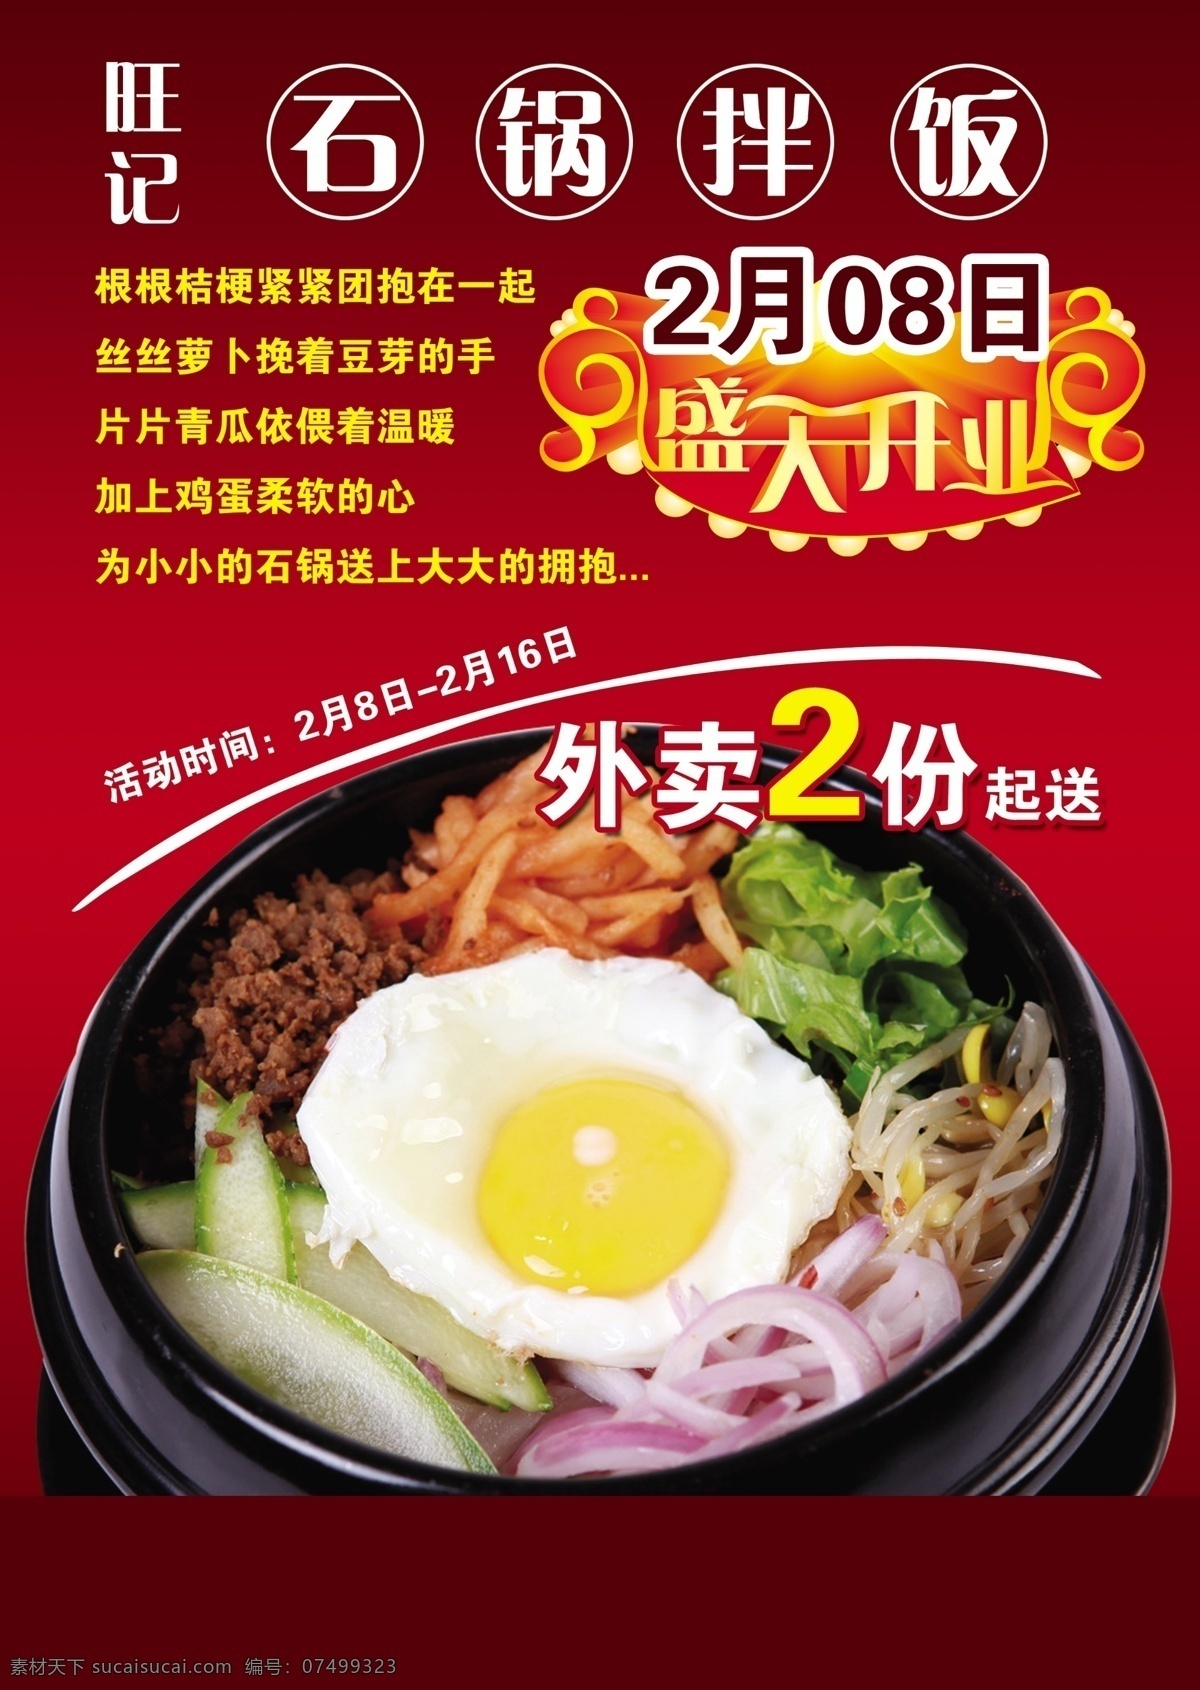 韩国 石 锅 拌饭 宣传单 页 排版 印刷 原创设计 其他原创设计